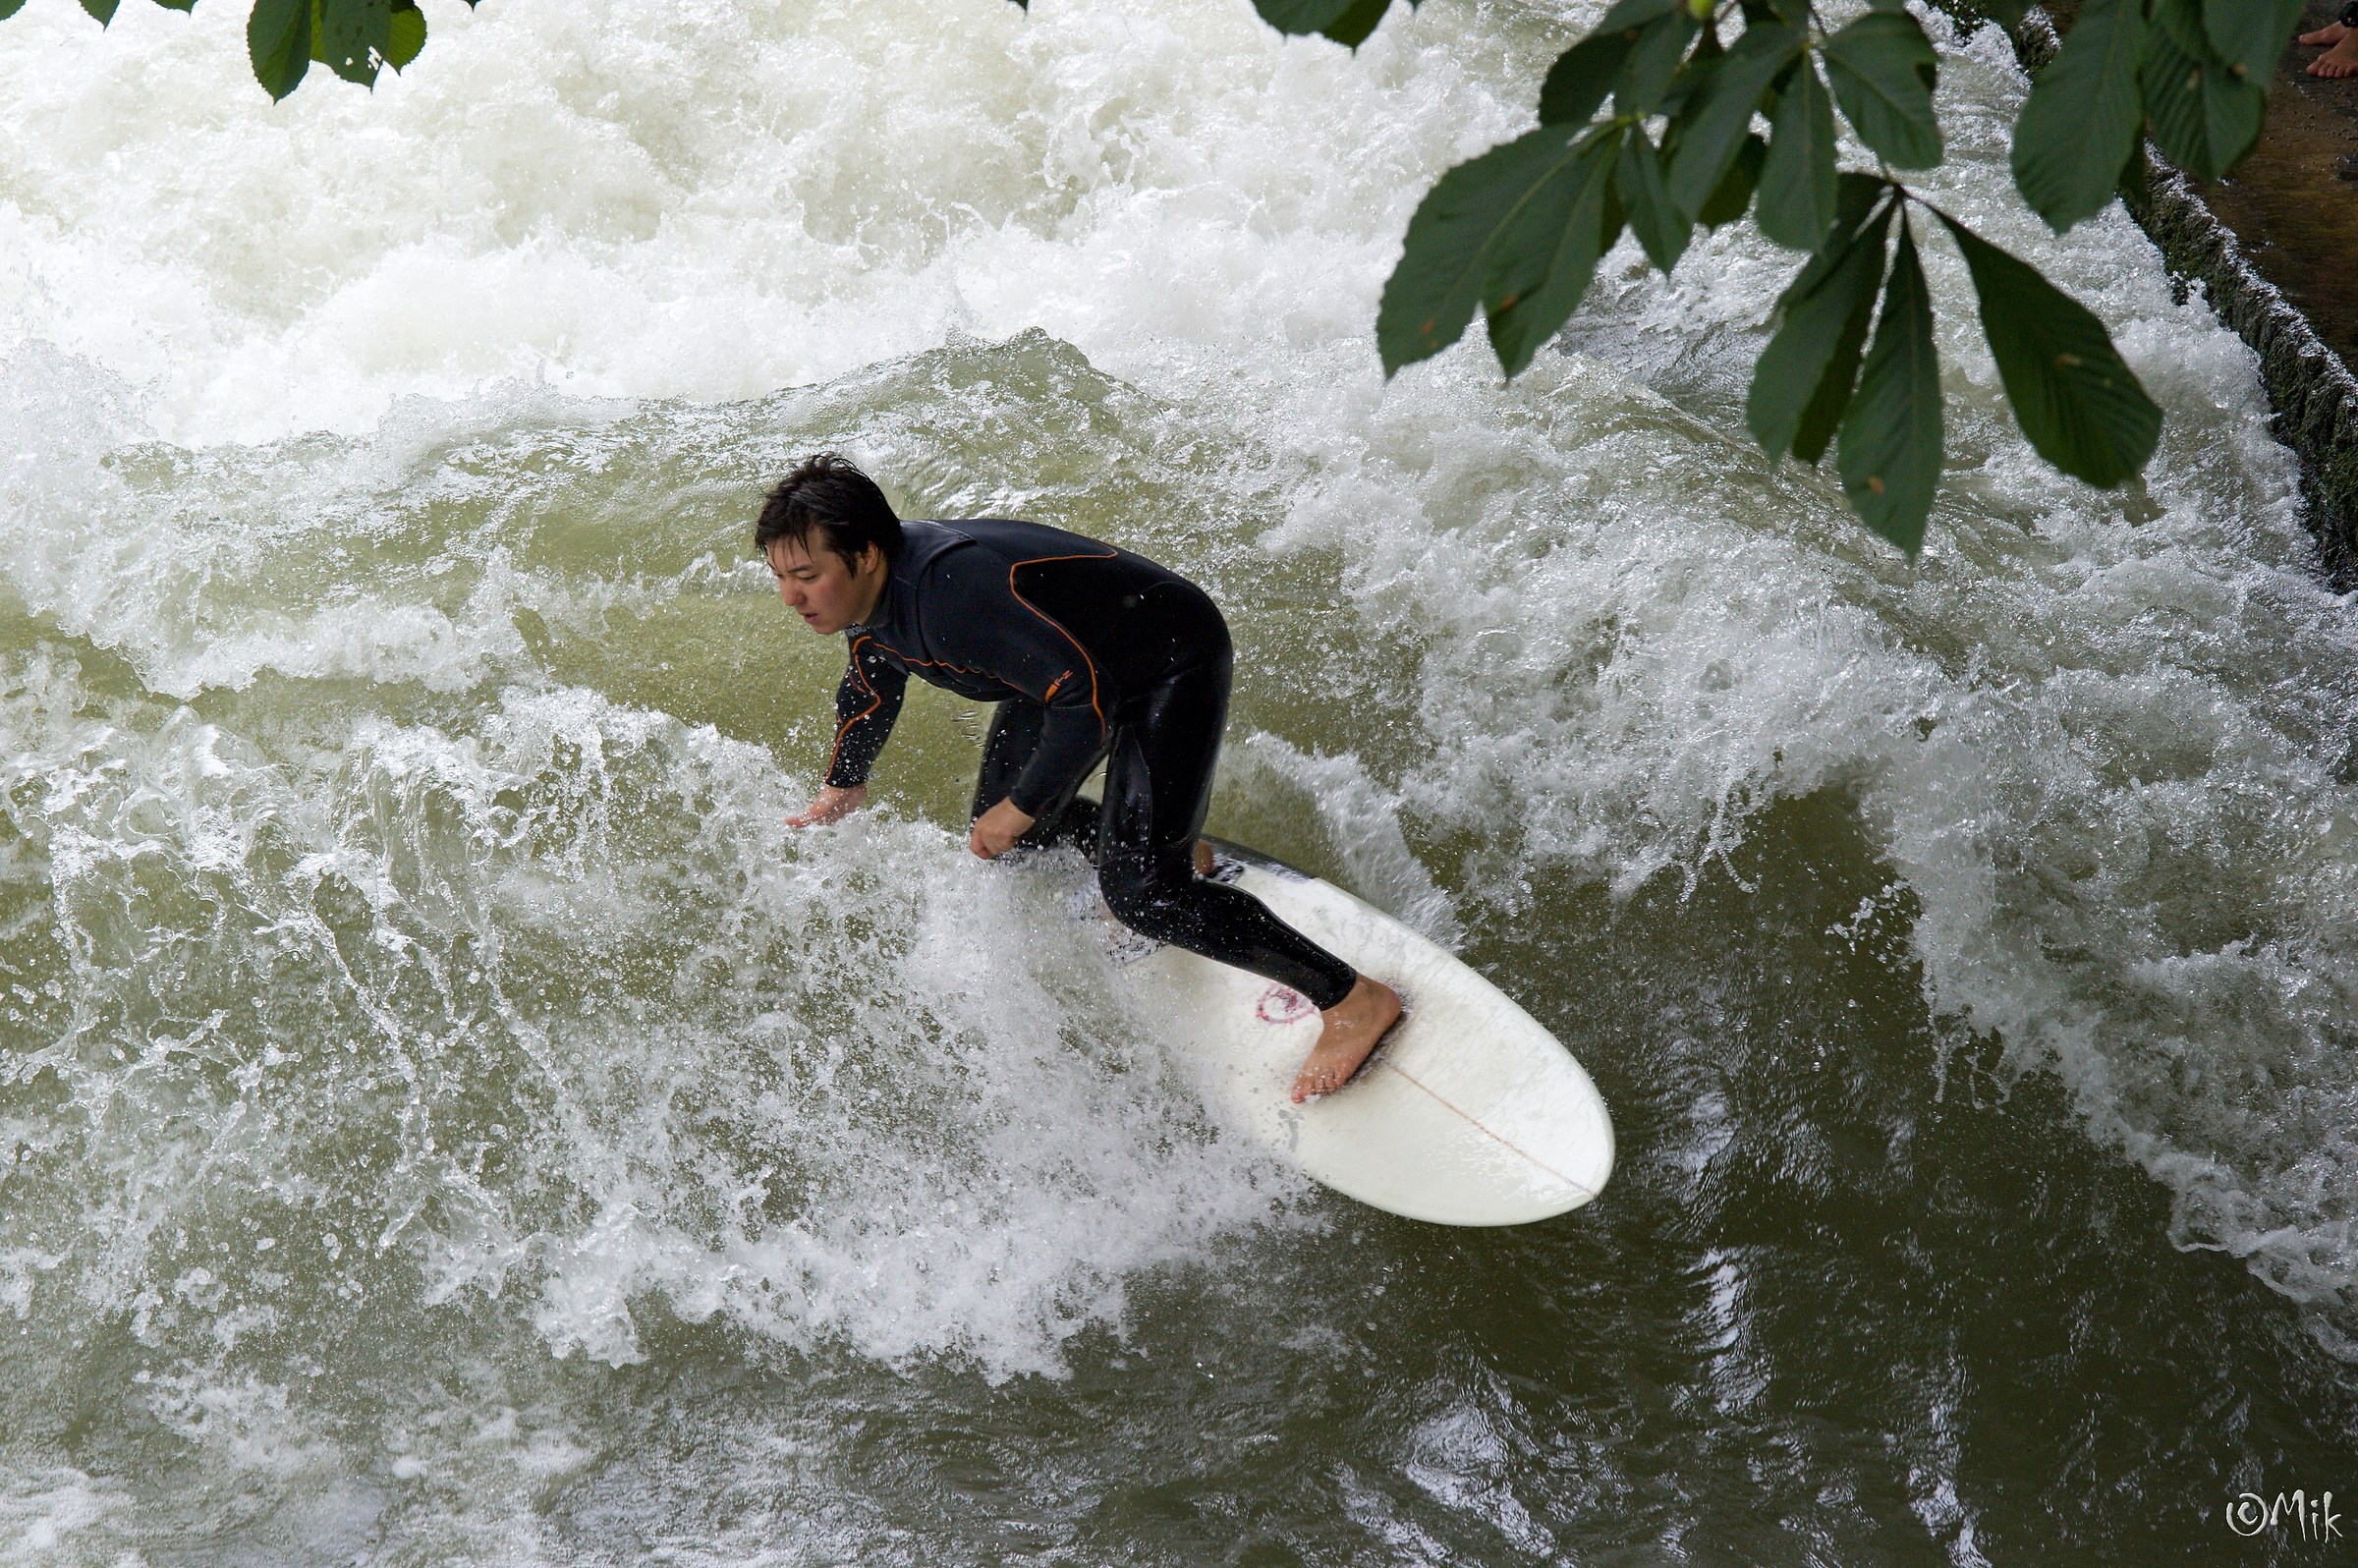 Munich River Surfing...